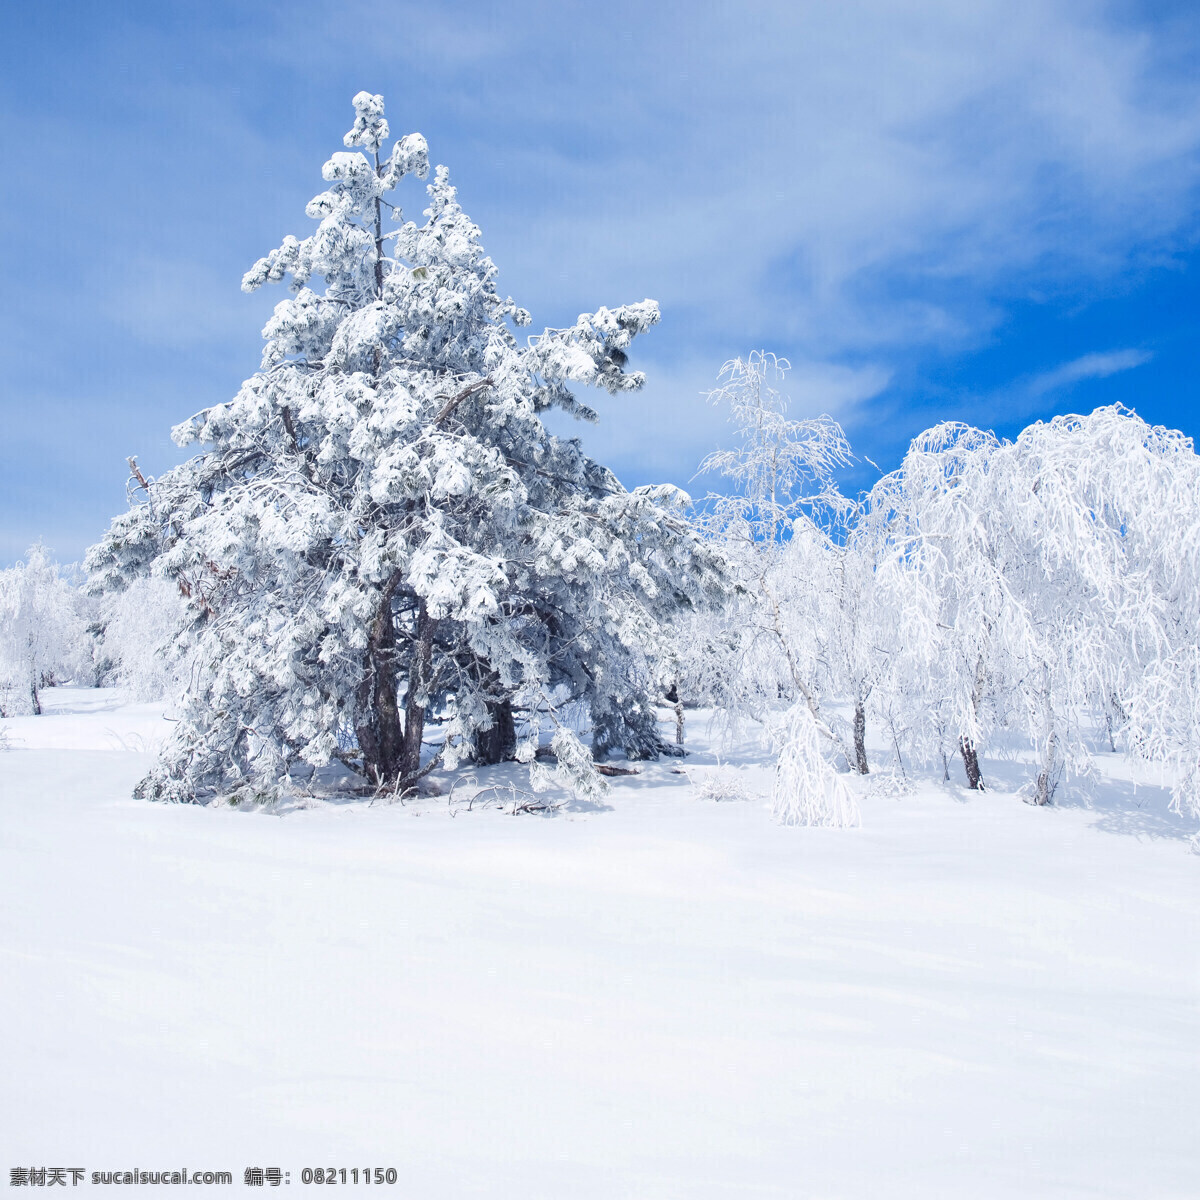 下雪 景观 冬季 冬天 雪景 美丽风景 景色 美景 积雪 雪地 森林 树木 山水风景 风景图片